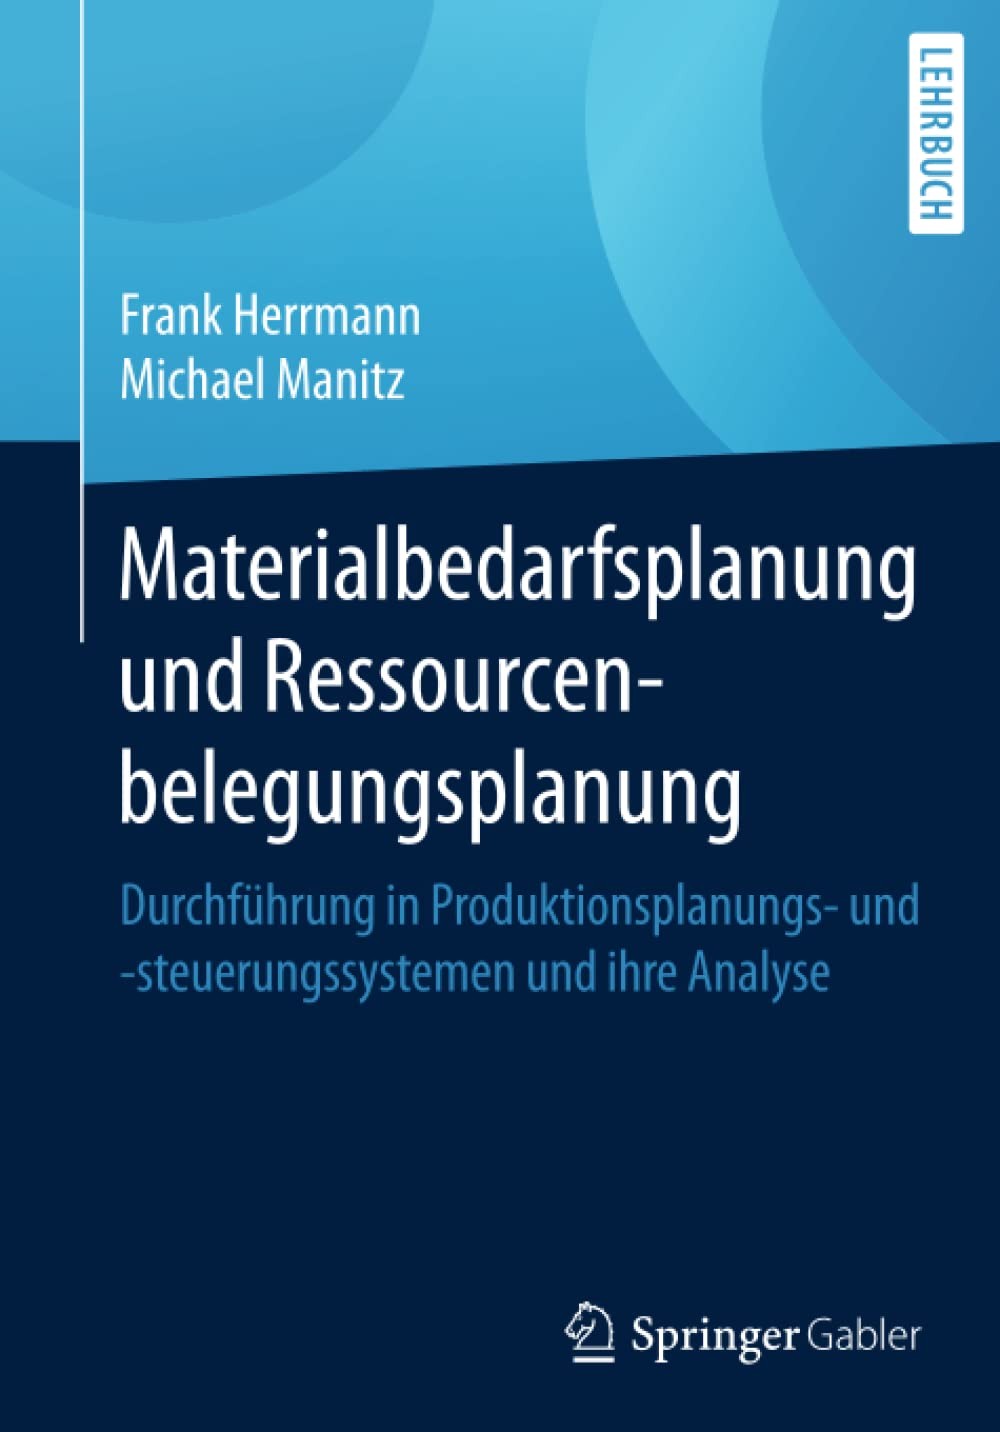 Materialbedarfsplanung und Ressourcenbelegungsplanung: Durchführung in Produktionsplanungs- und -steuerungssystemen und ihre Analyse